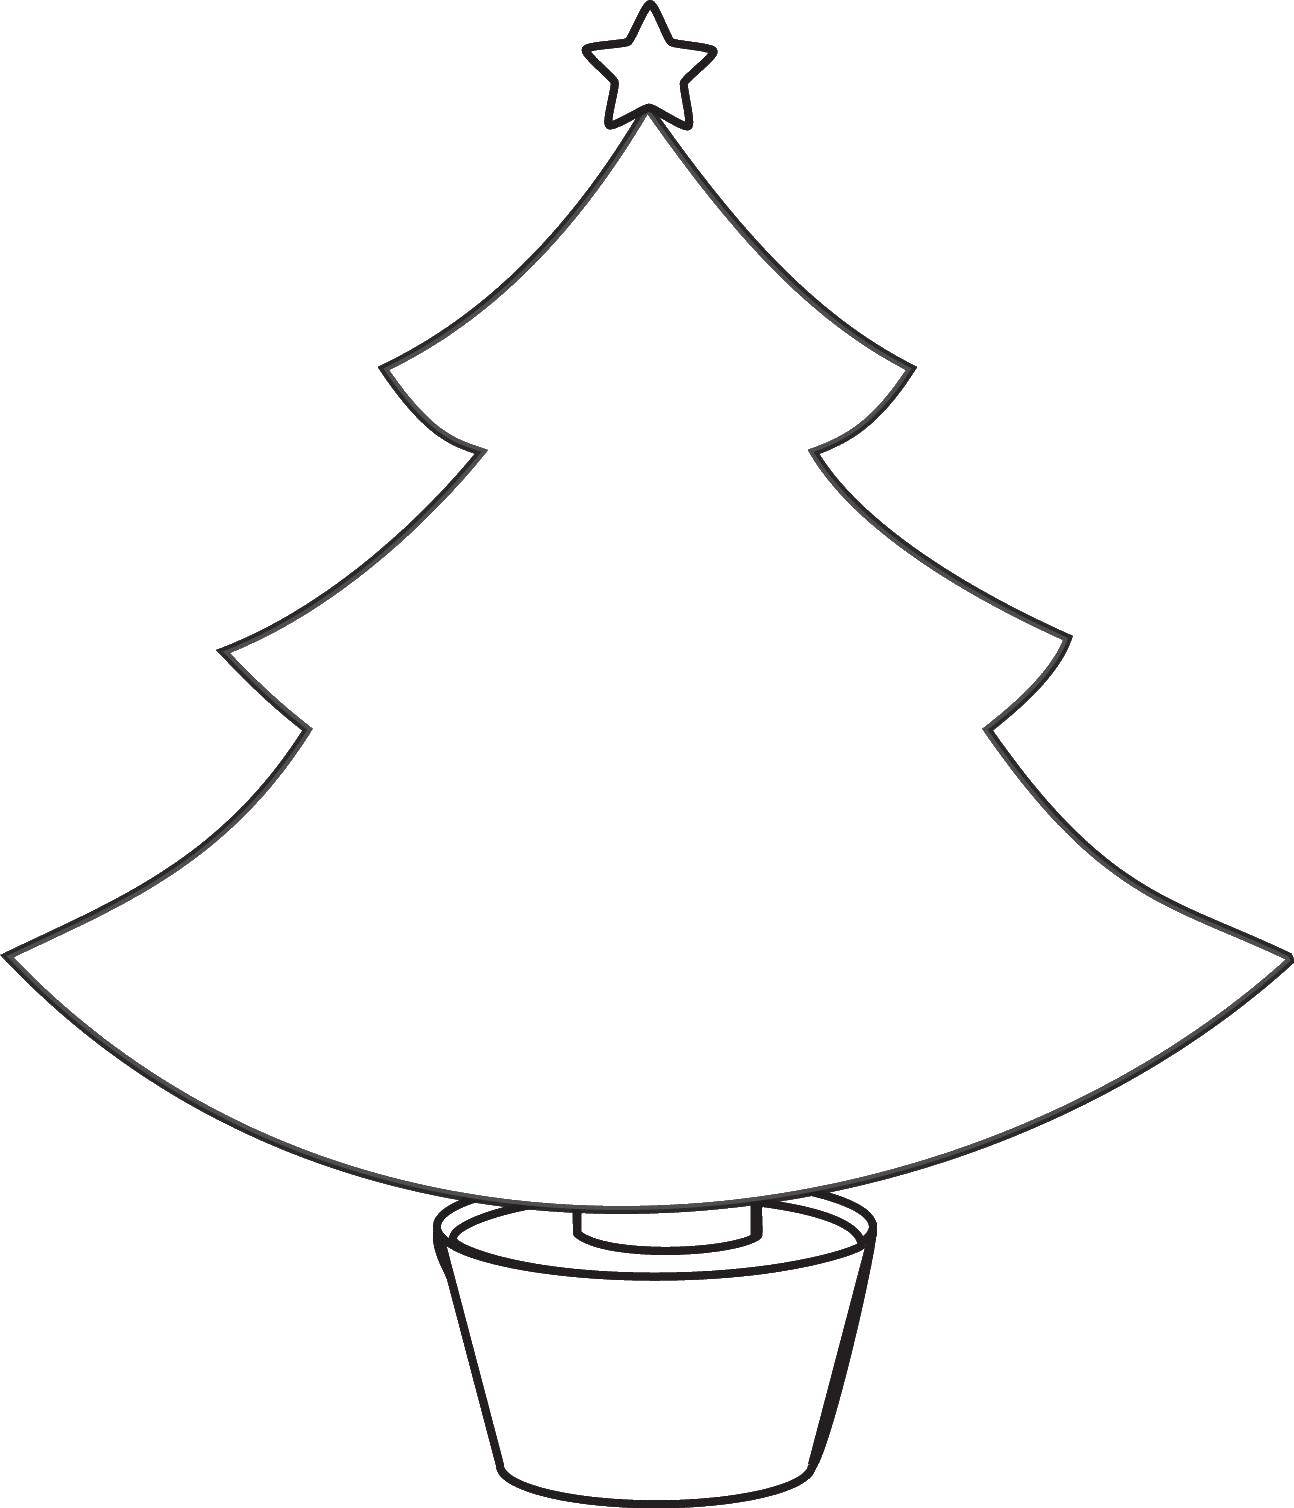 Название: Раскраска Рождественская елка. Категория: Рождество. Теги: рождество, елка, санта.